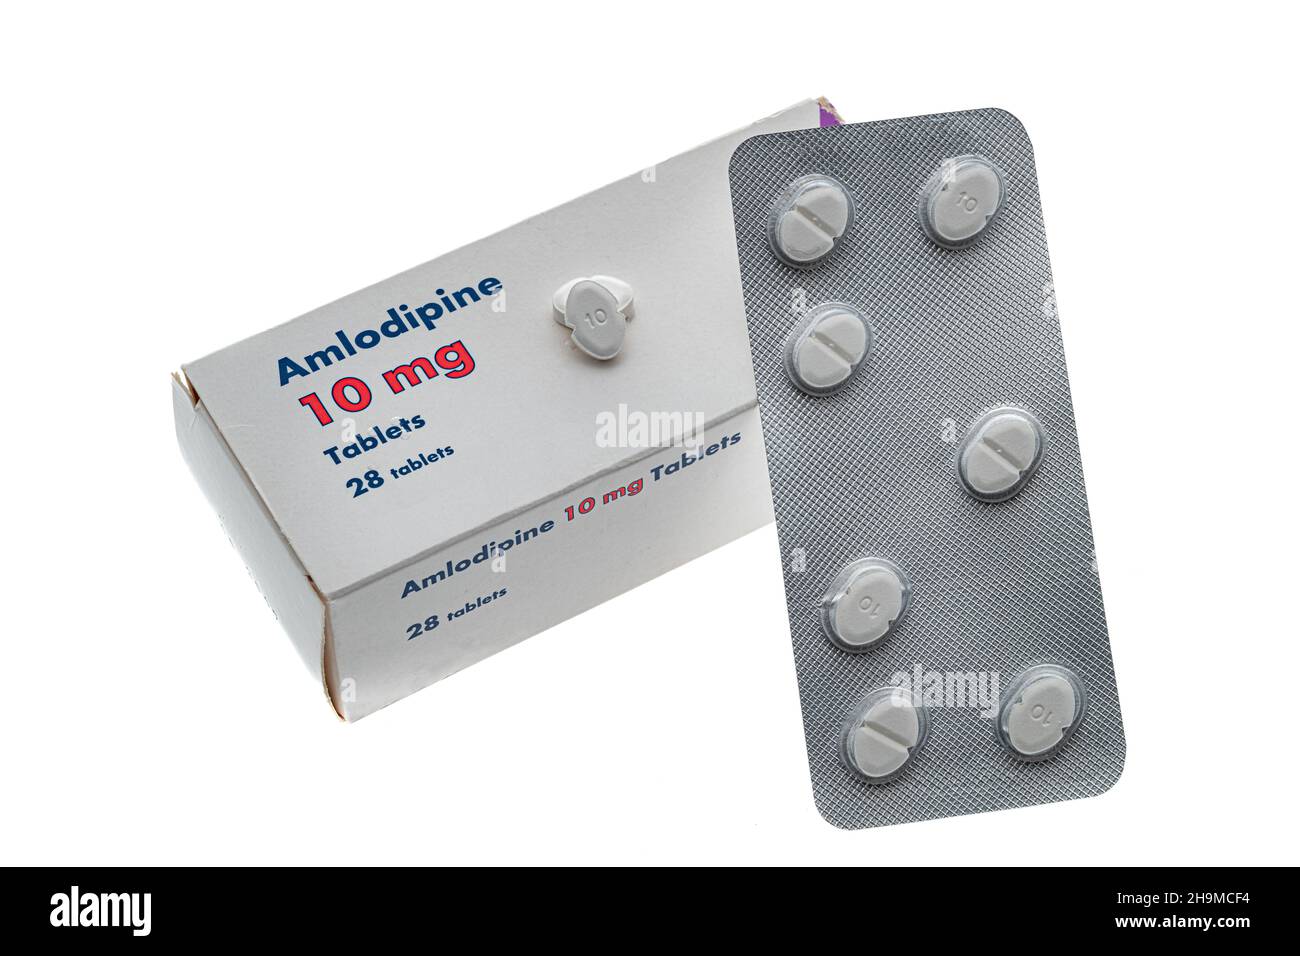 Una caja genérica de pastillas de Amlodipina comúnmente utilizada para el tratamiento de la hipertensión. Esta es la versión genérica del medicamento Norvasc. Foto de stock